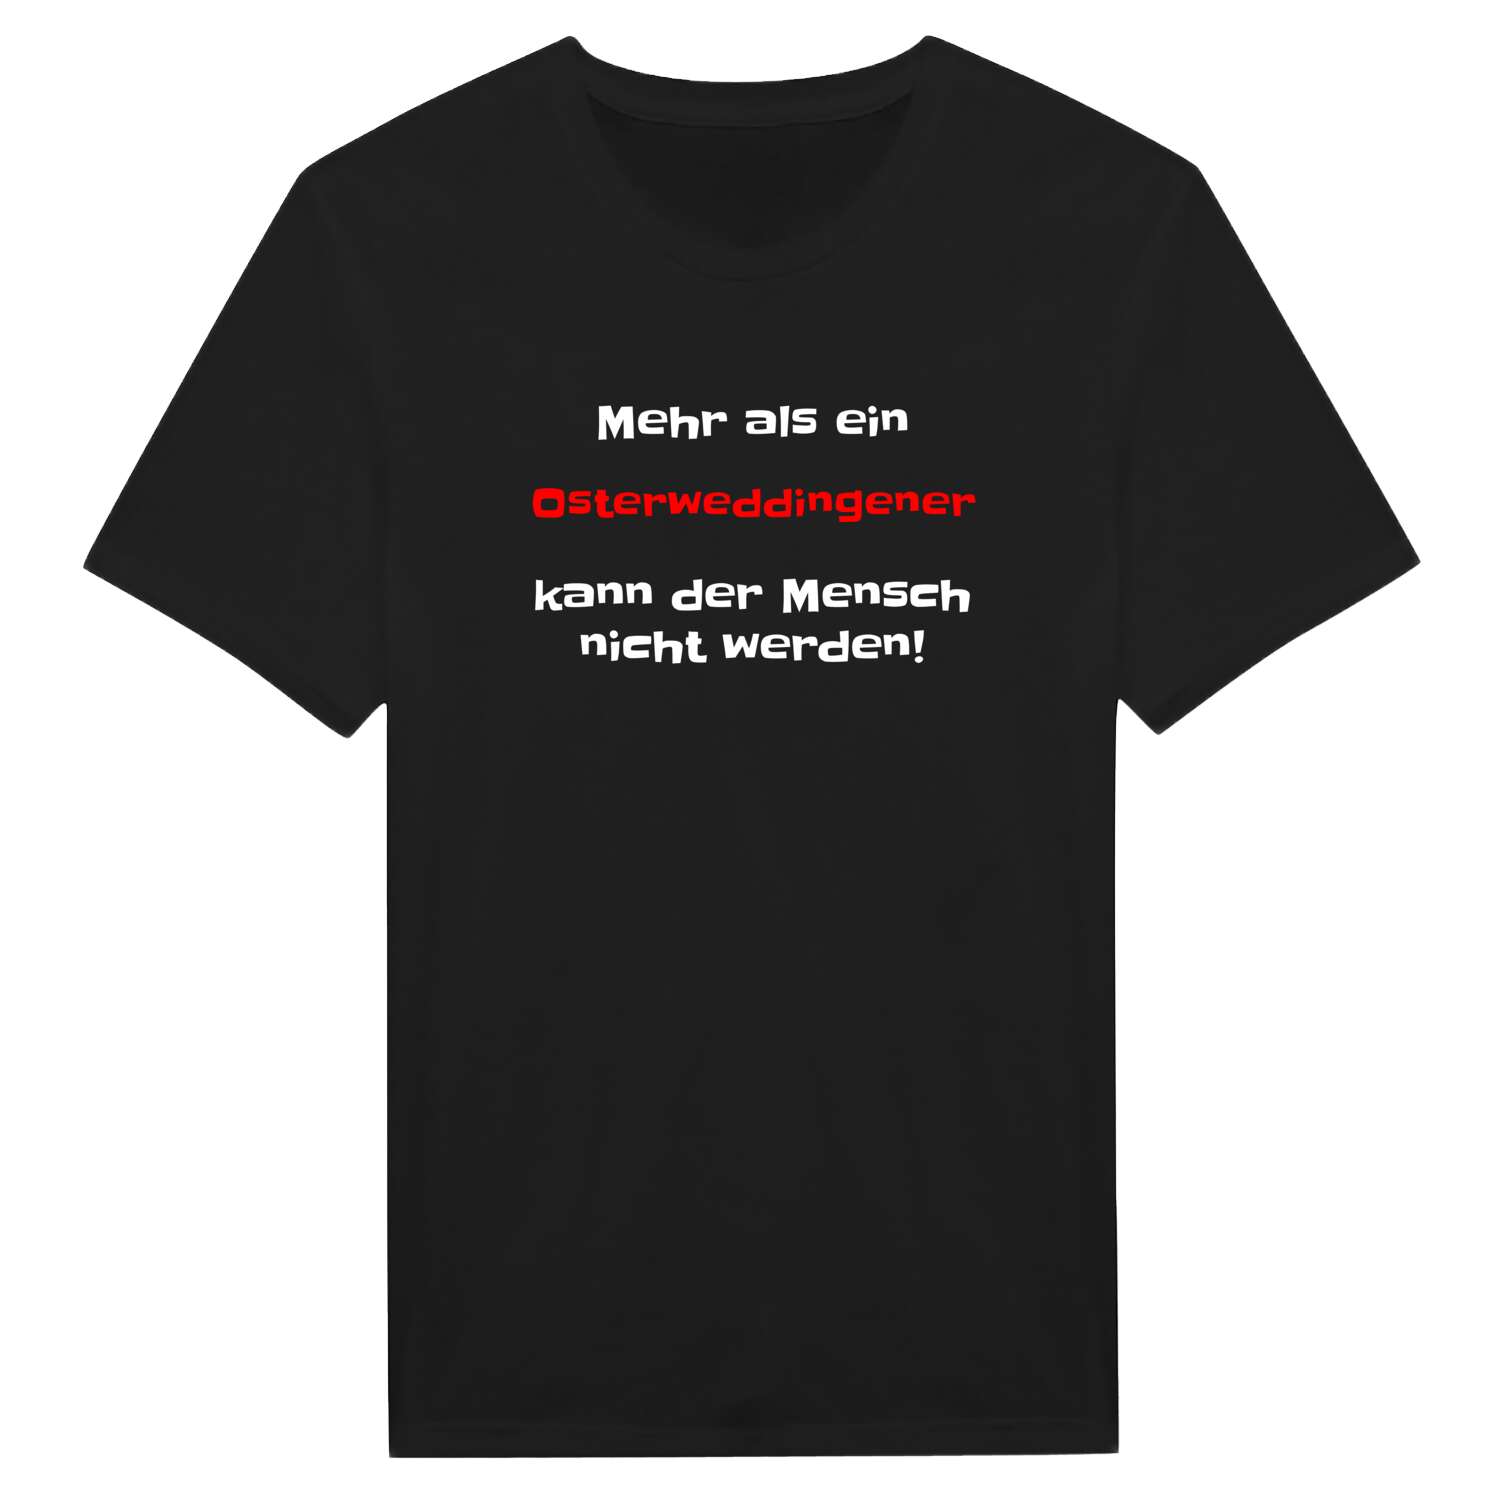 Osterweddingen T-Shirt »Mehr als ein«